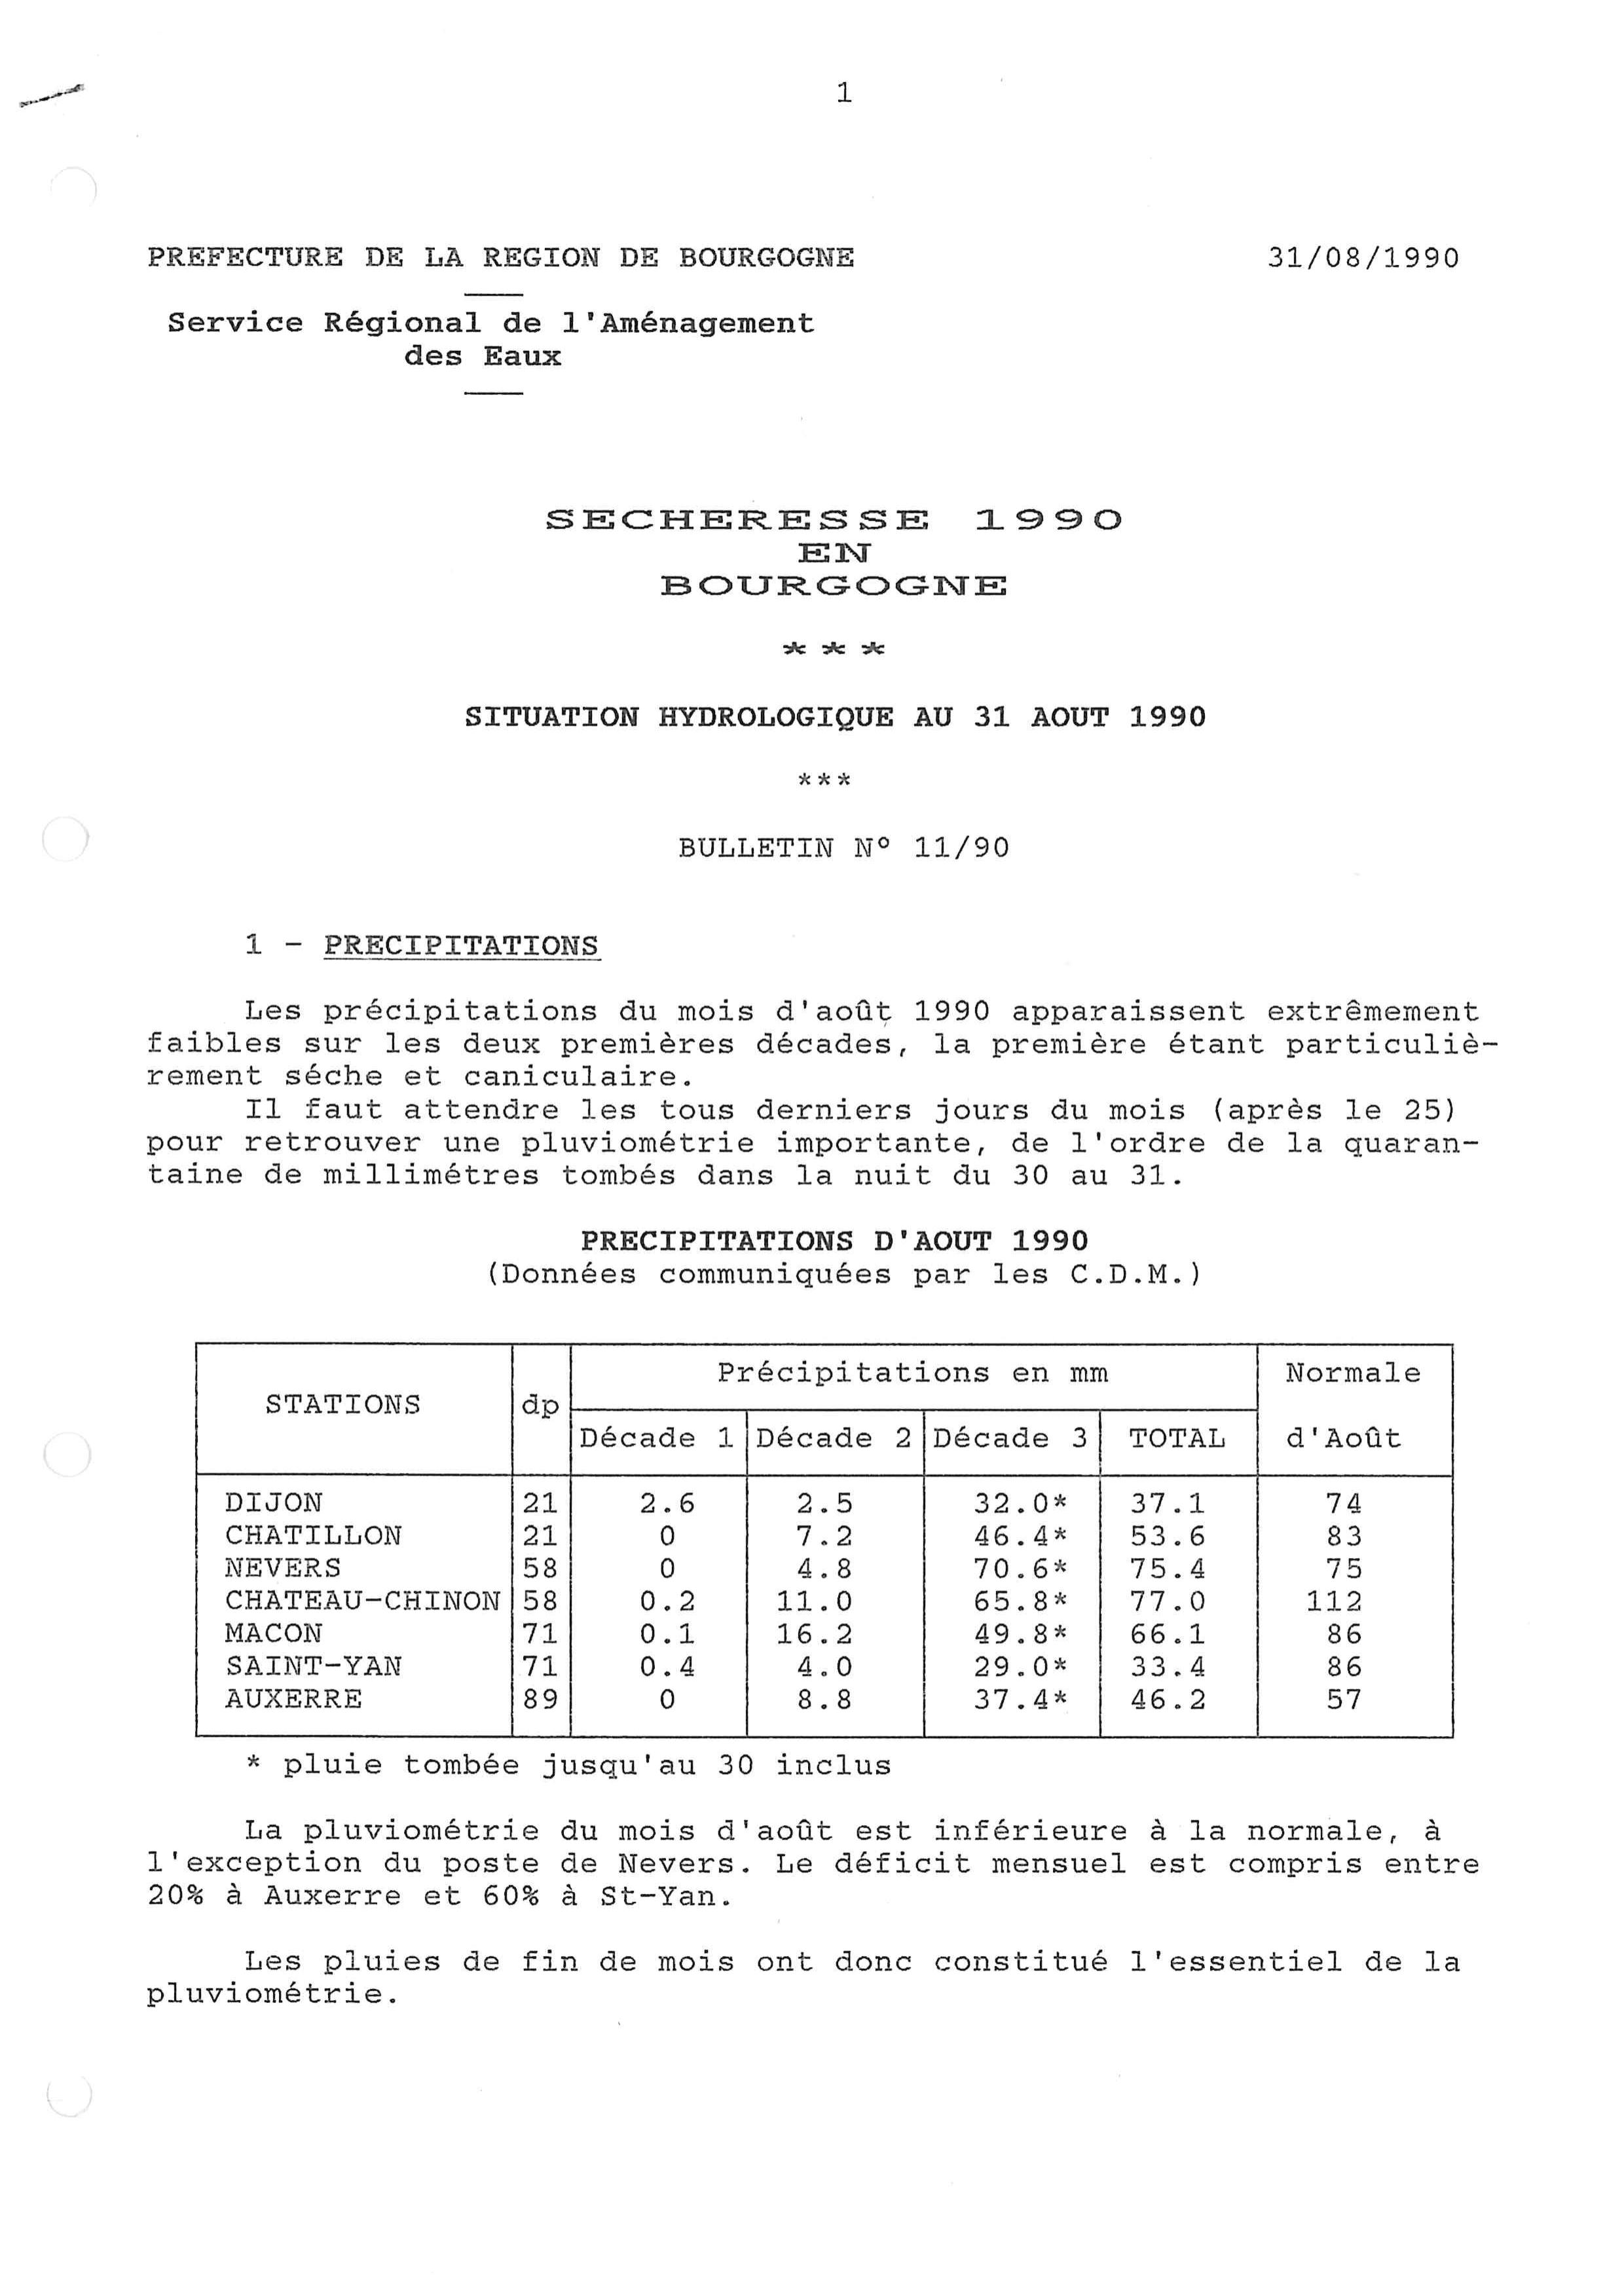 Bulletin hydrologique du mois d'août 1990